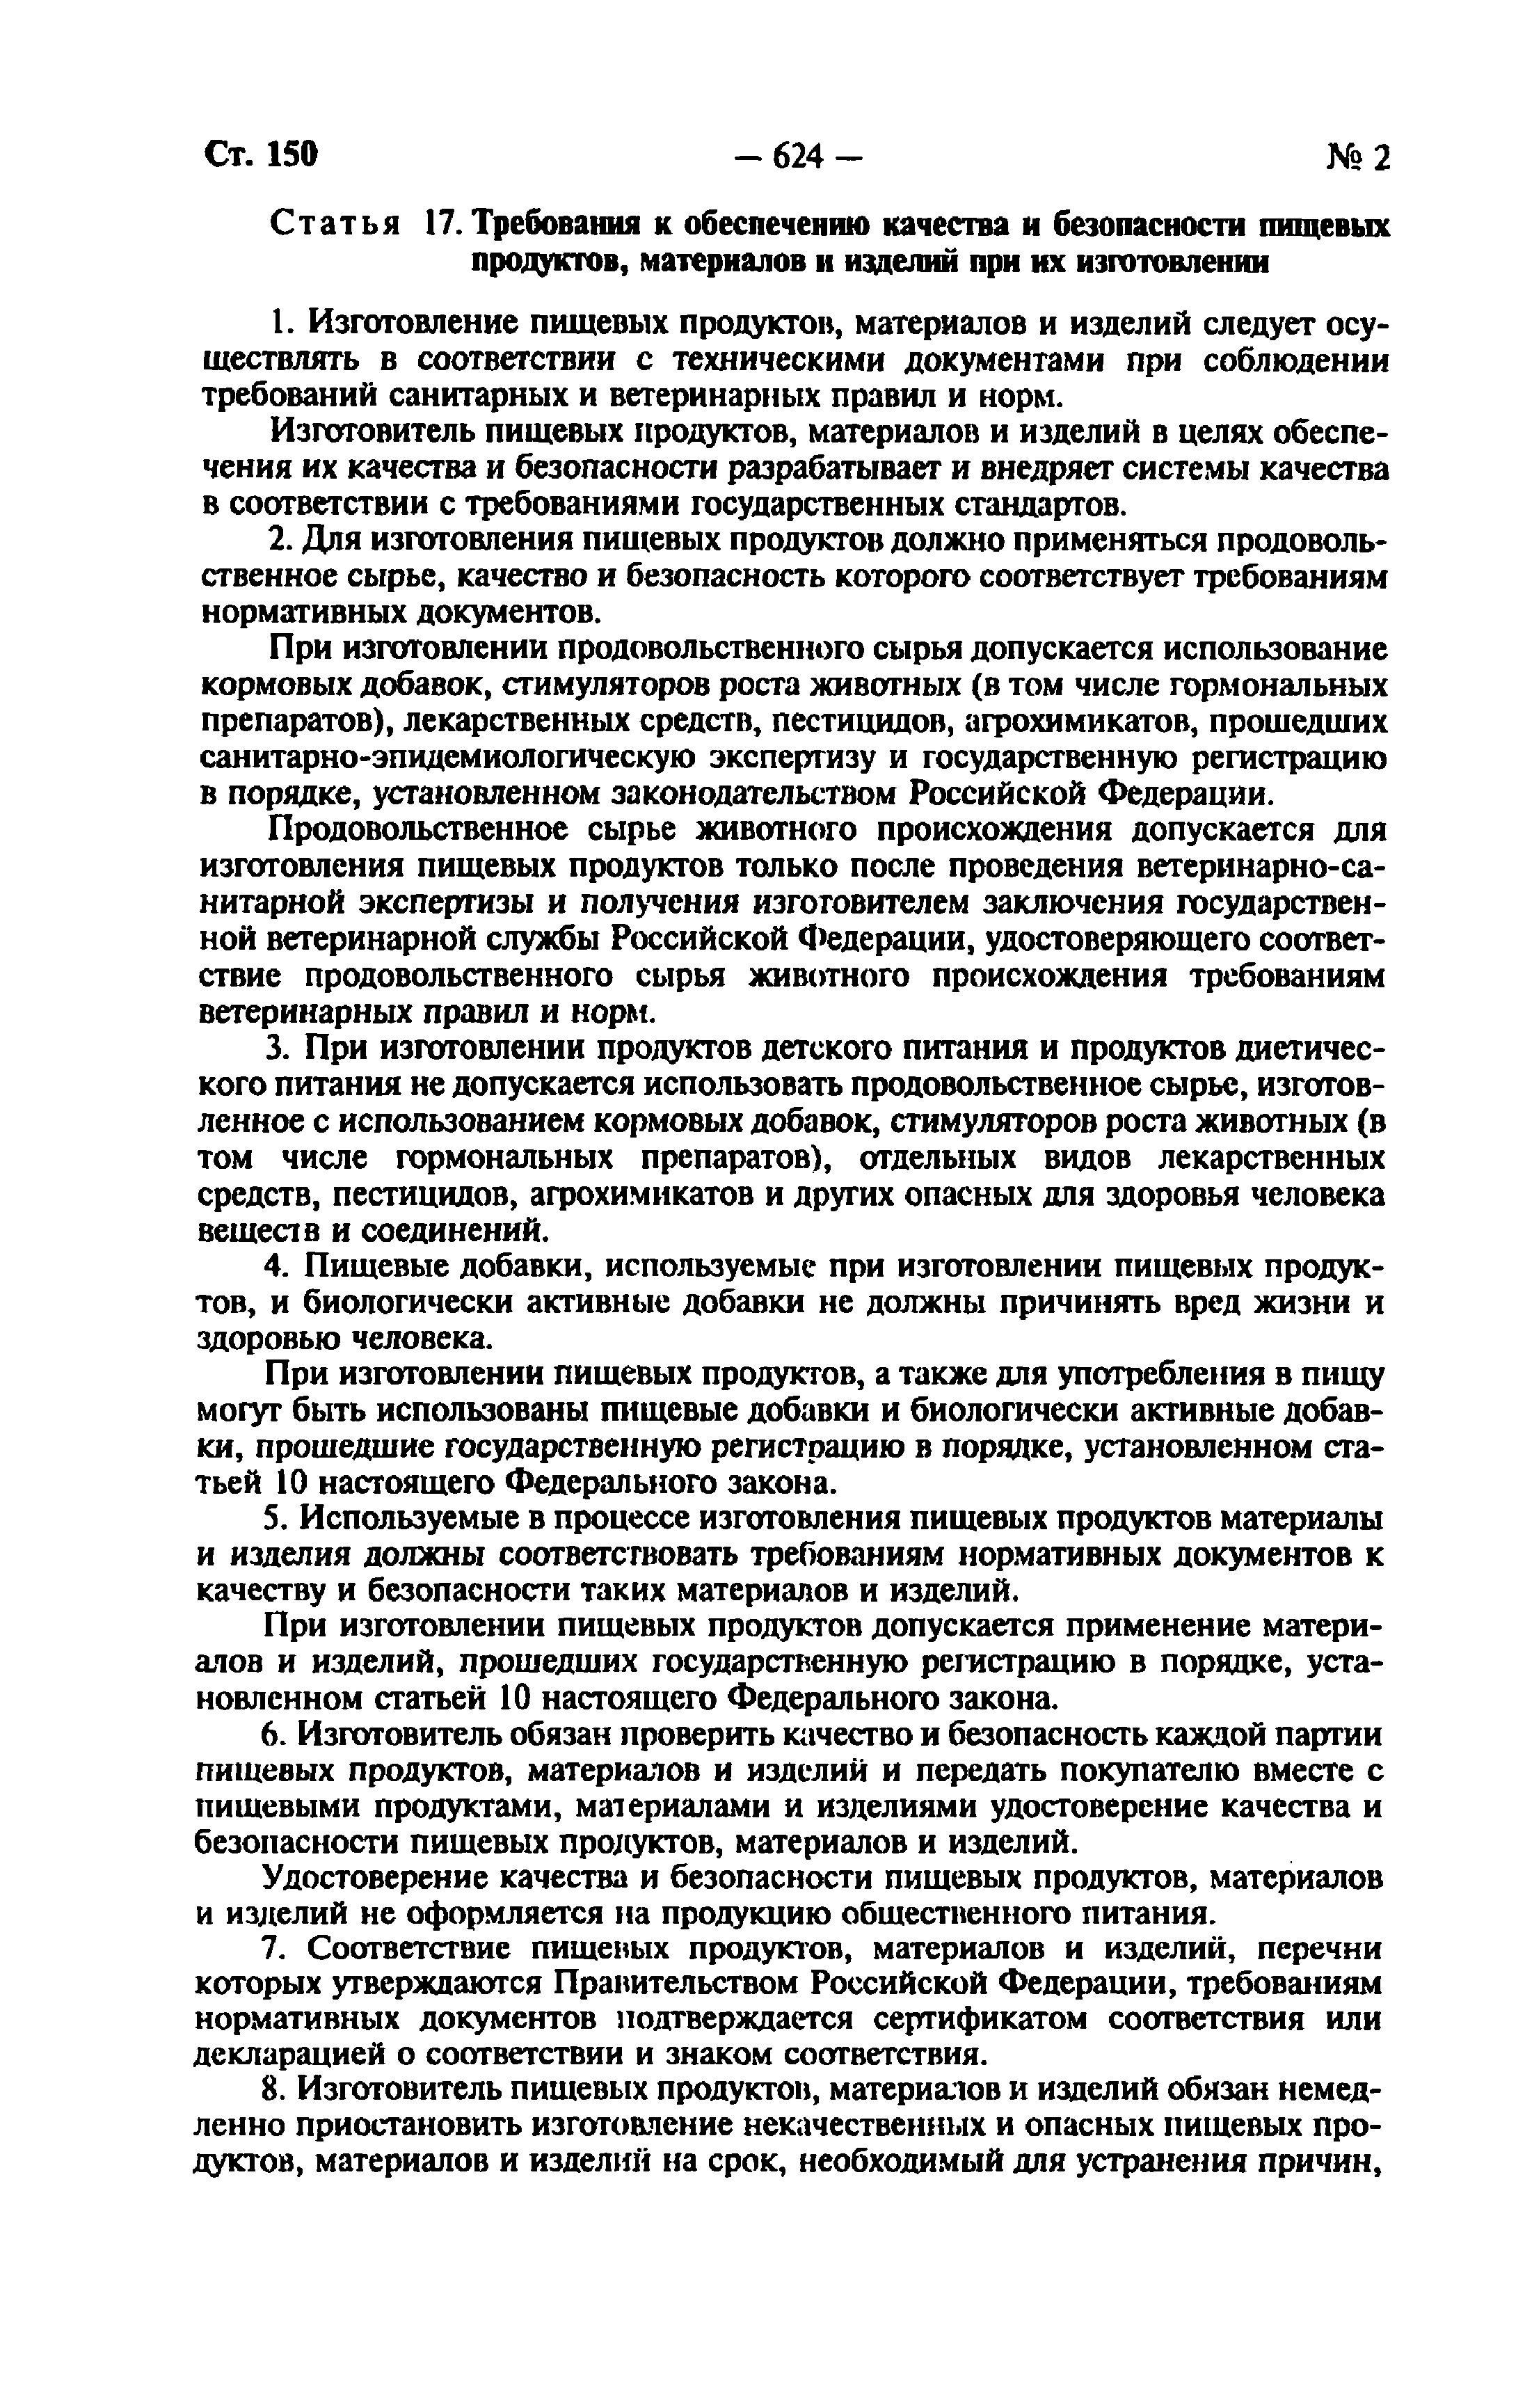 Статья 3 фз 29